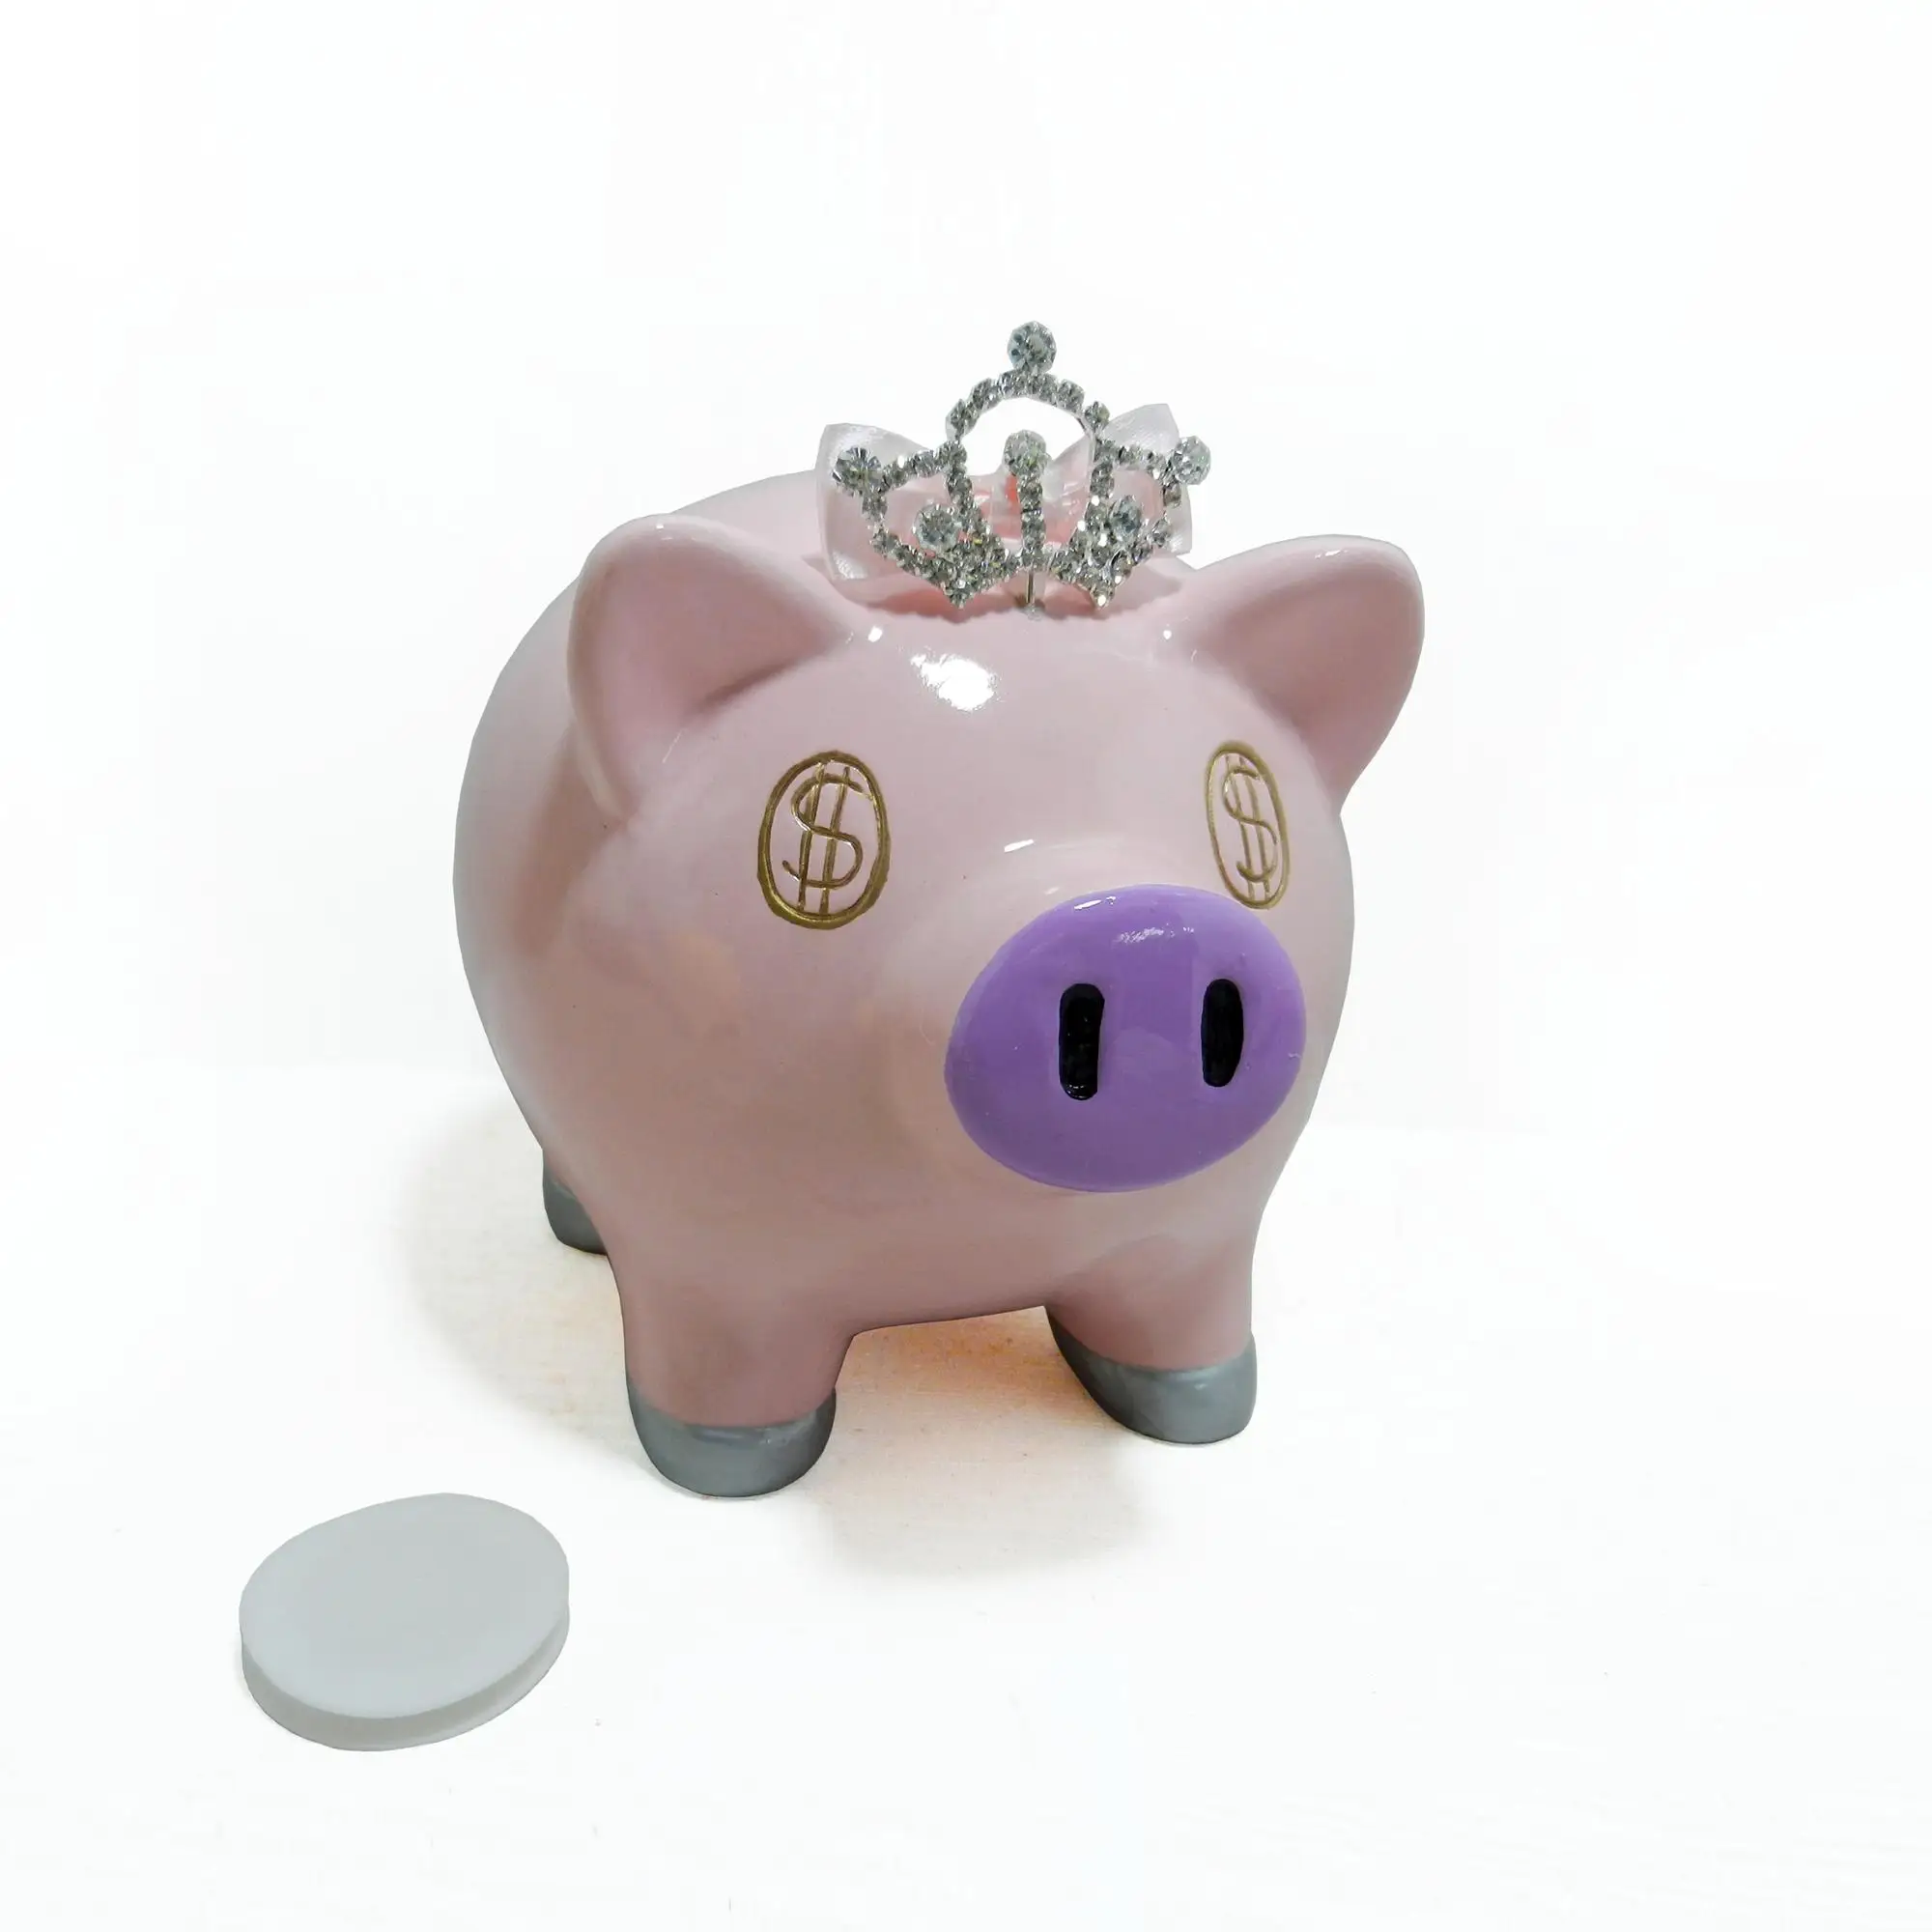 buy piggy bank online